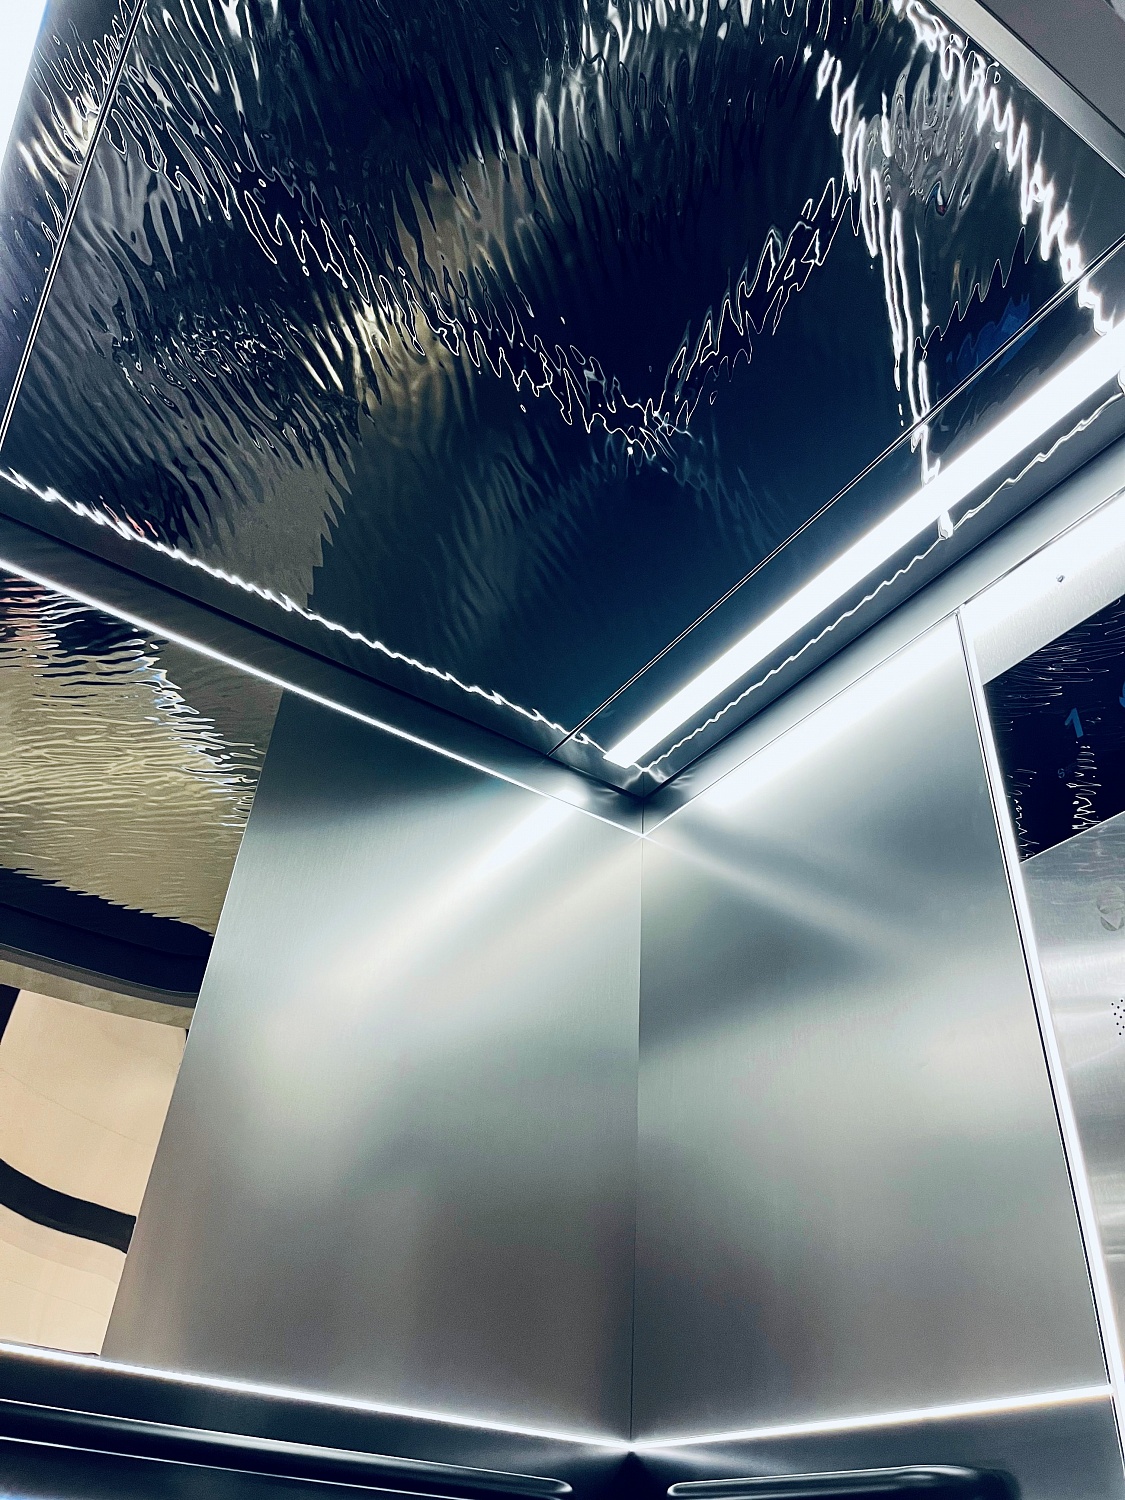 АО «ЩЛЗ» представил новую модель лифта на выставке «ИнтерСтройЭкспо» 